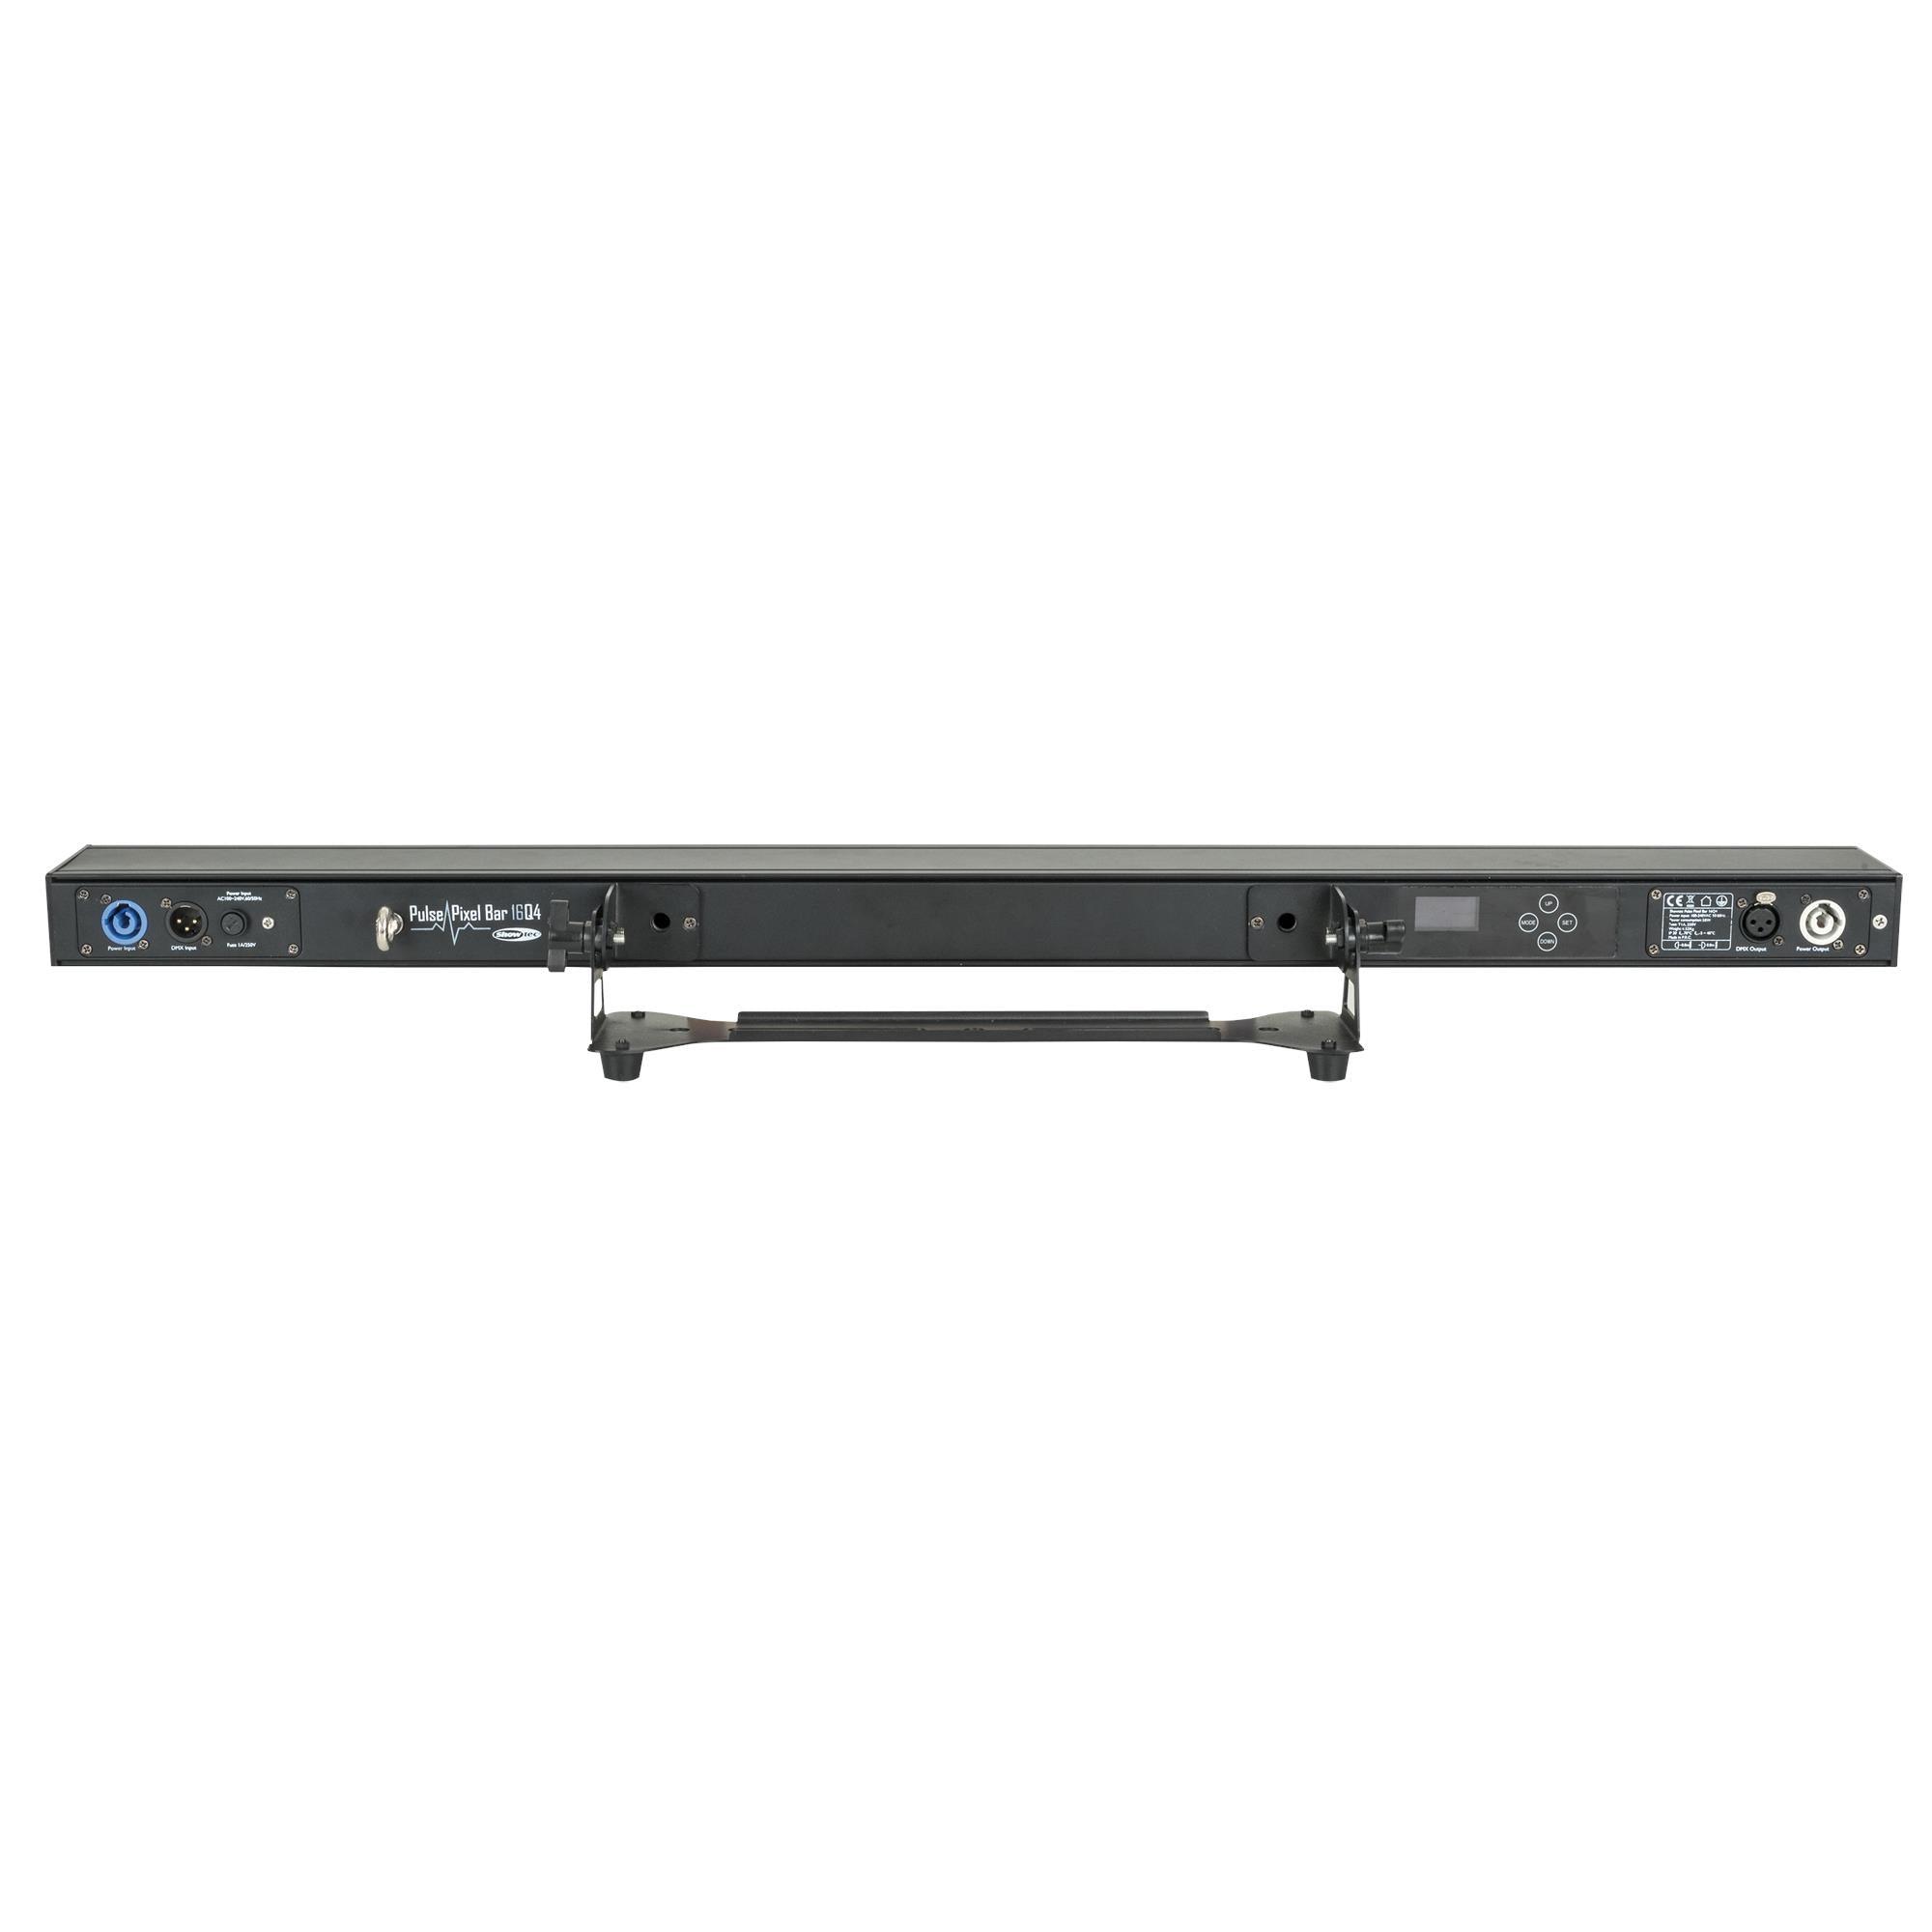 Showtec Pulse Pixel Bar 16 Q4 Indoor RGBW light bar Batten - DY Pro Audio